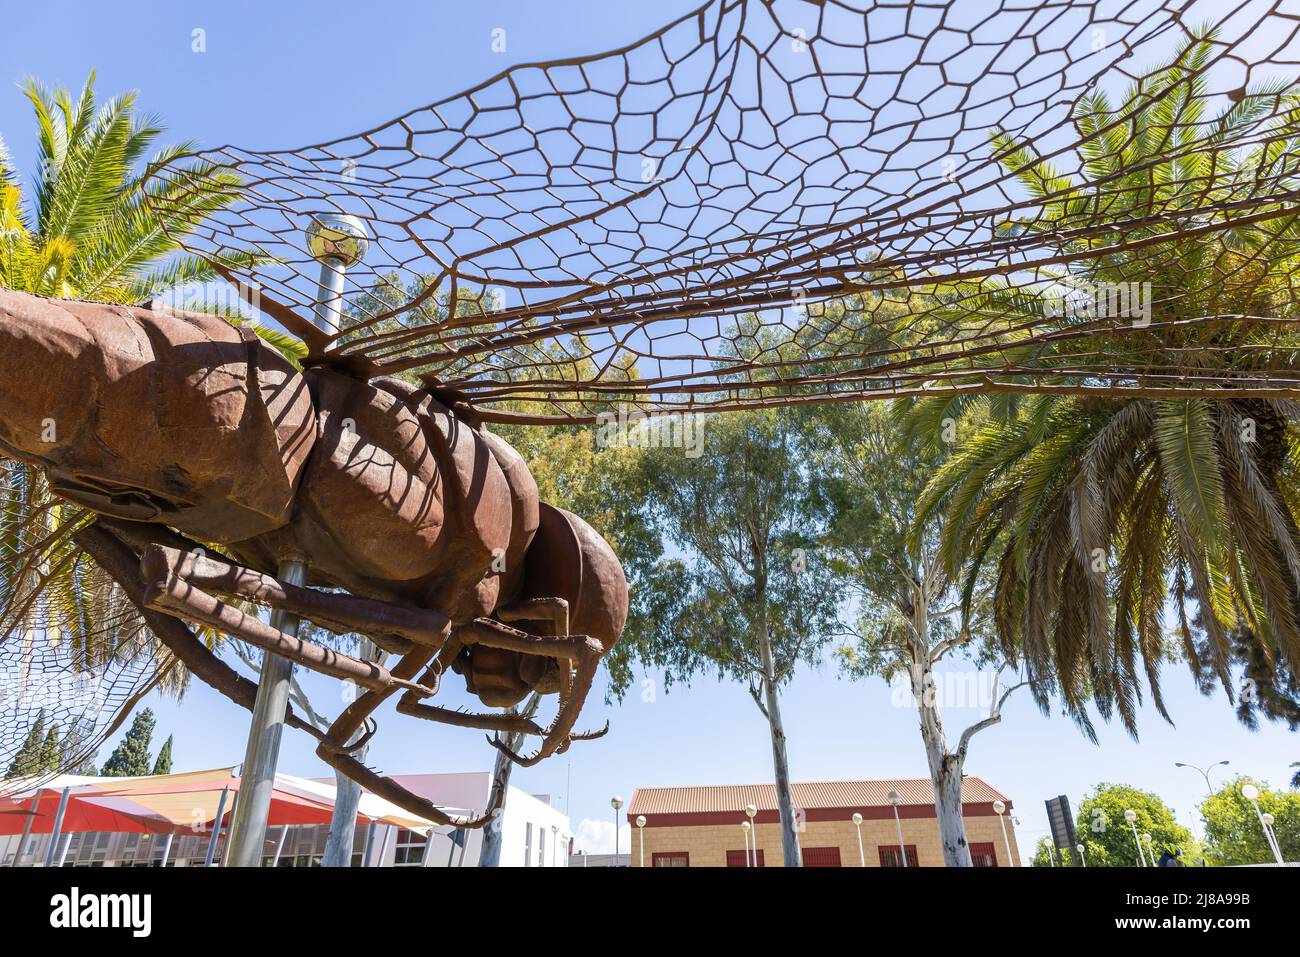 Huelva, Espagne - 28 avril 2022 : vue partielle du monument d'une libellule en acier corten, dans le Campus de "El Carmen" de l'Université Huelva Banque D'Images